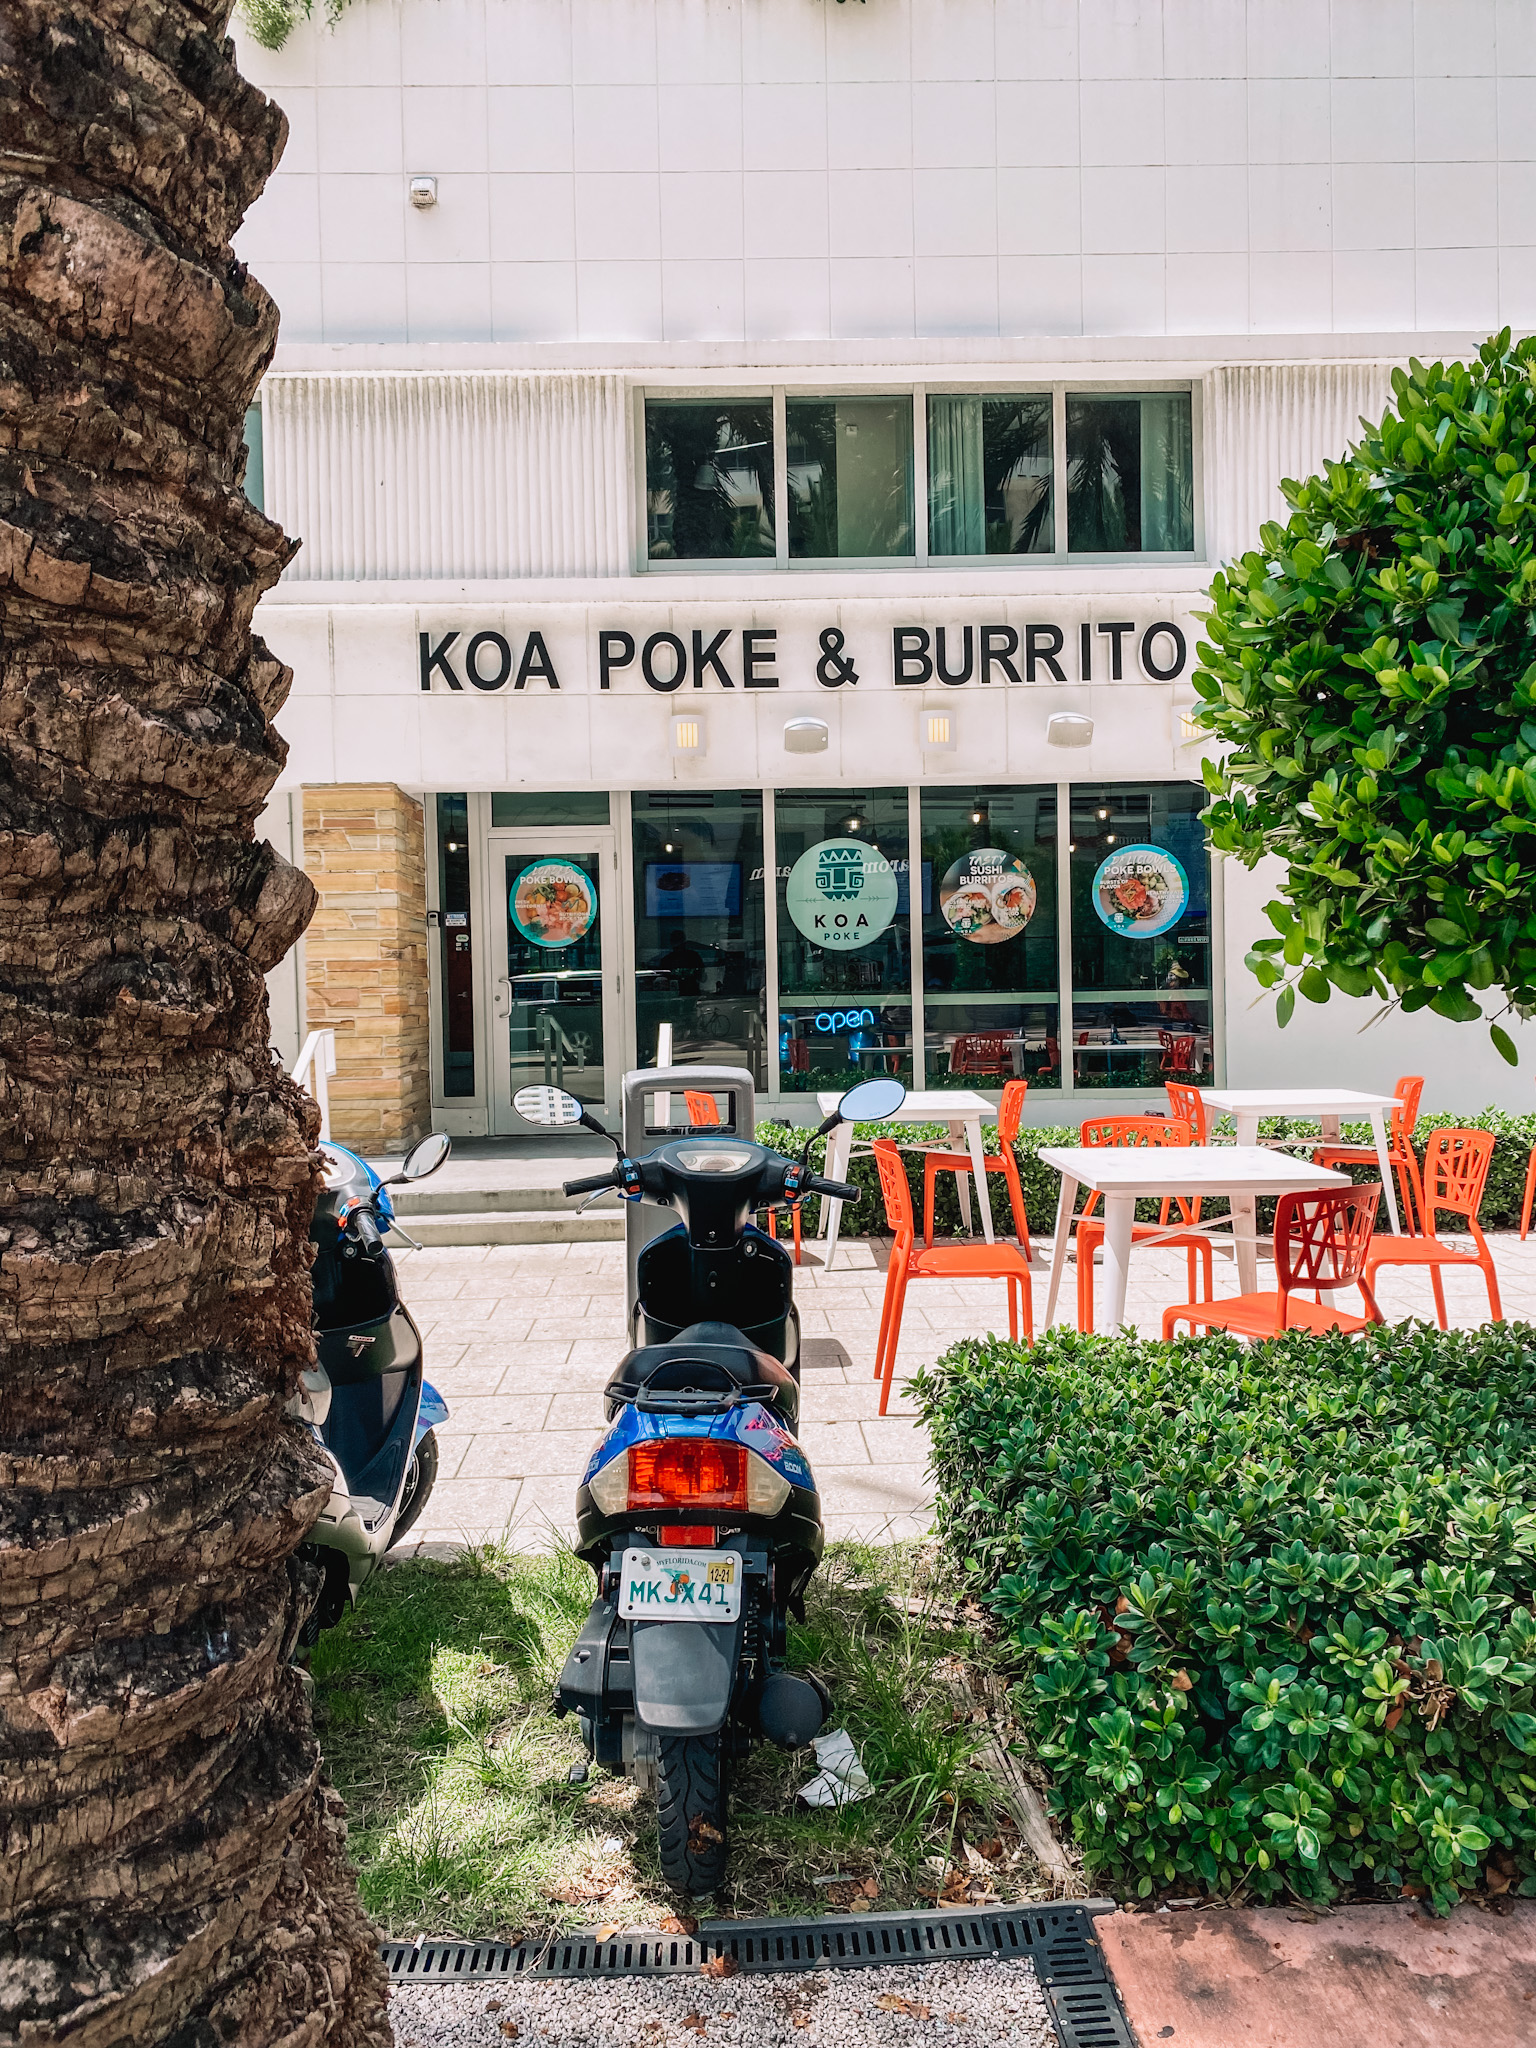 Koa Poke & Burrito South Beach Miami